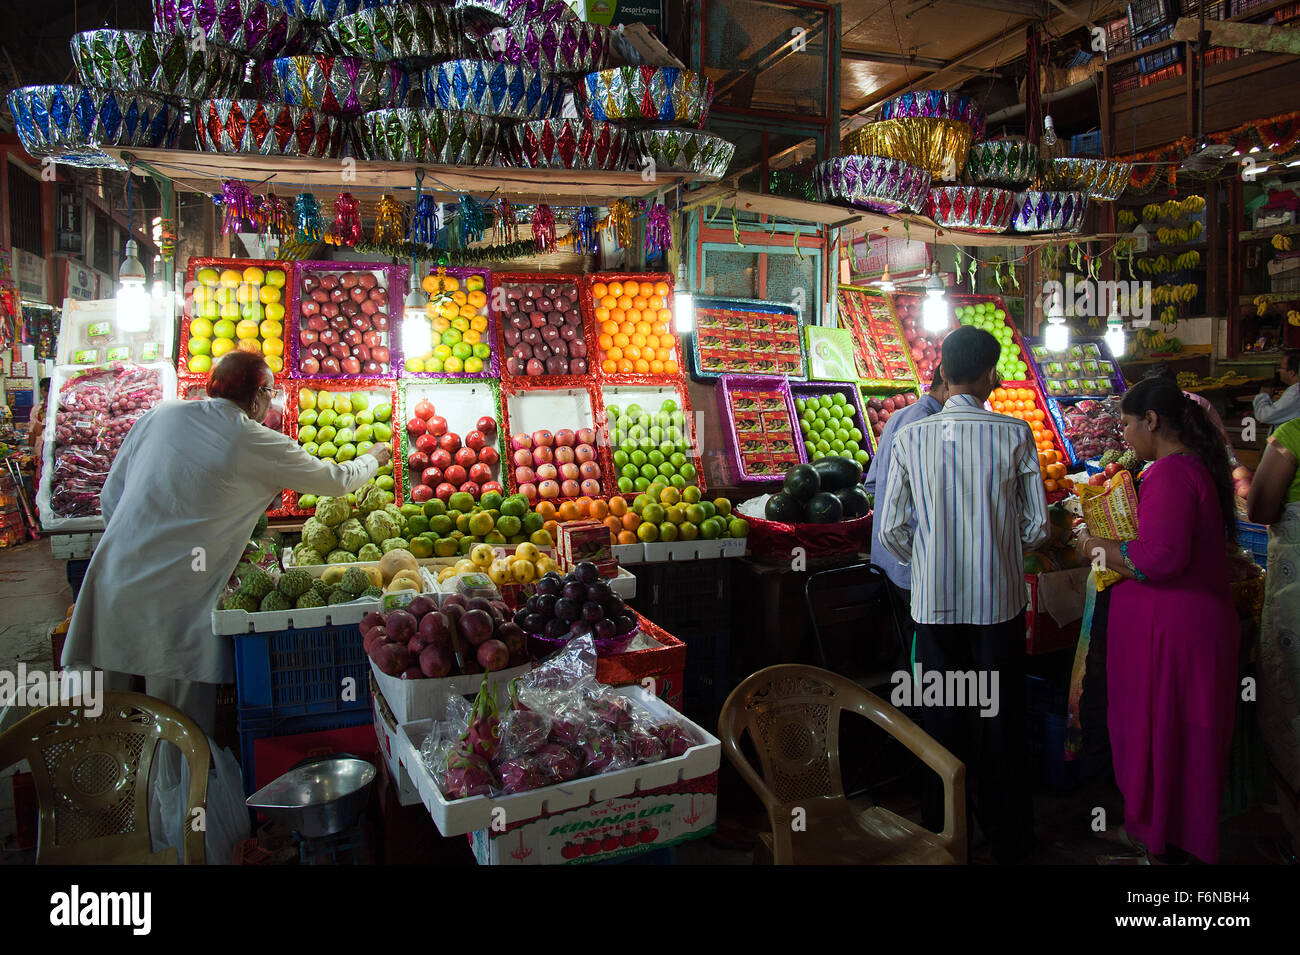 Das Bild der Obstladen aufgenommen in Crawford Market, Mumbai, Indien Stockfoto